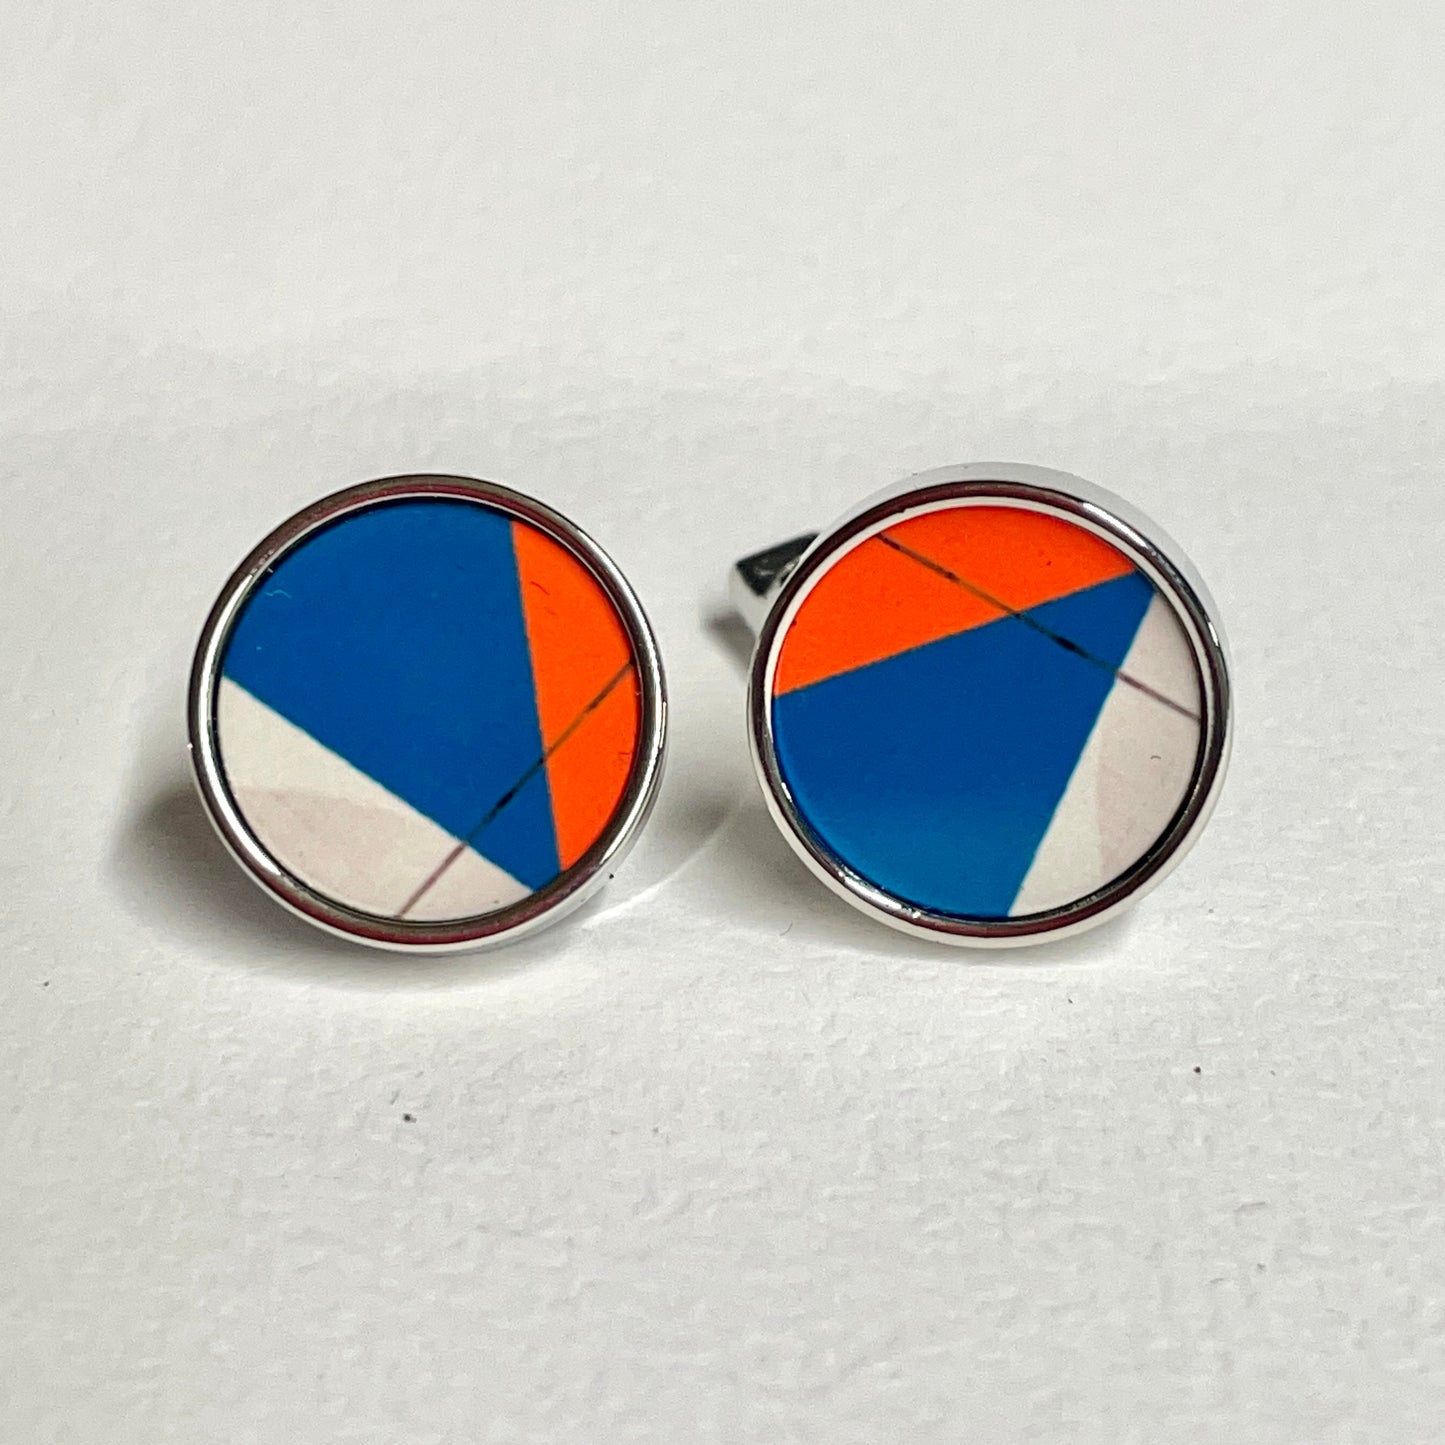 Fest Cufflinks - Blue & Orange